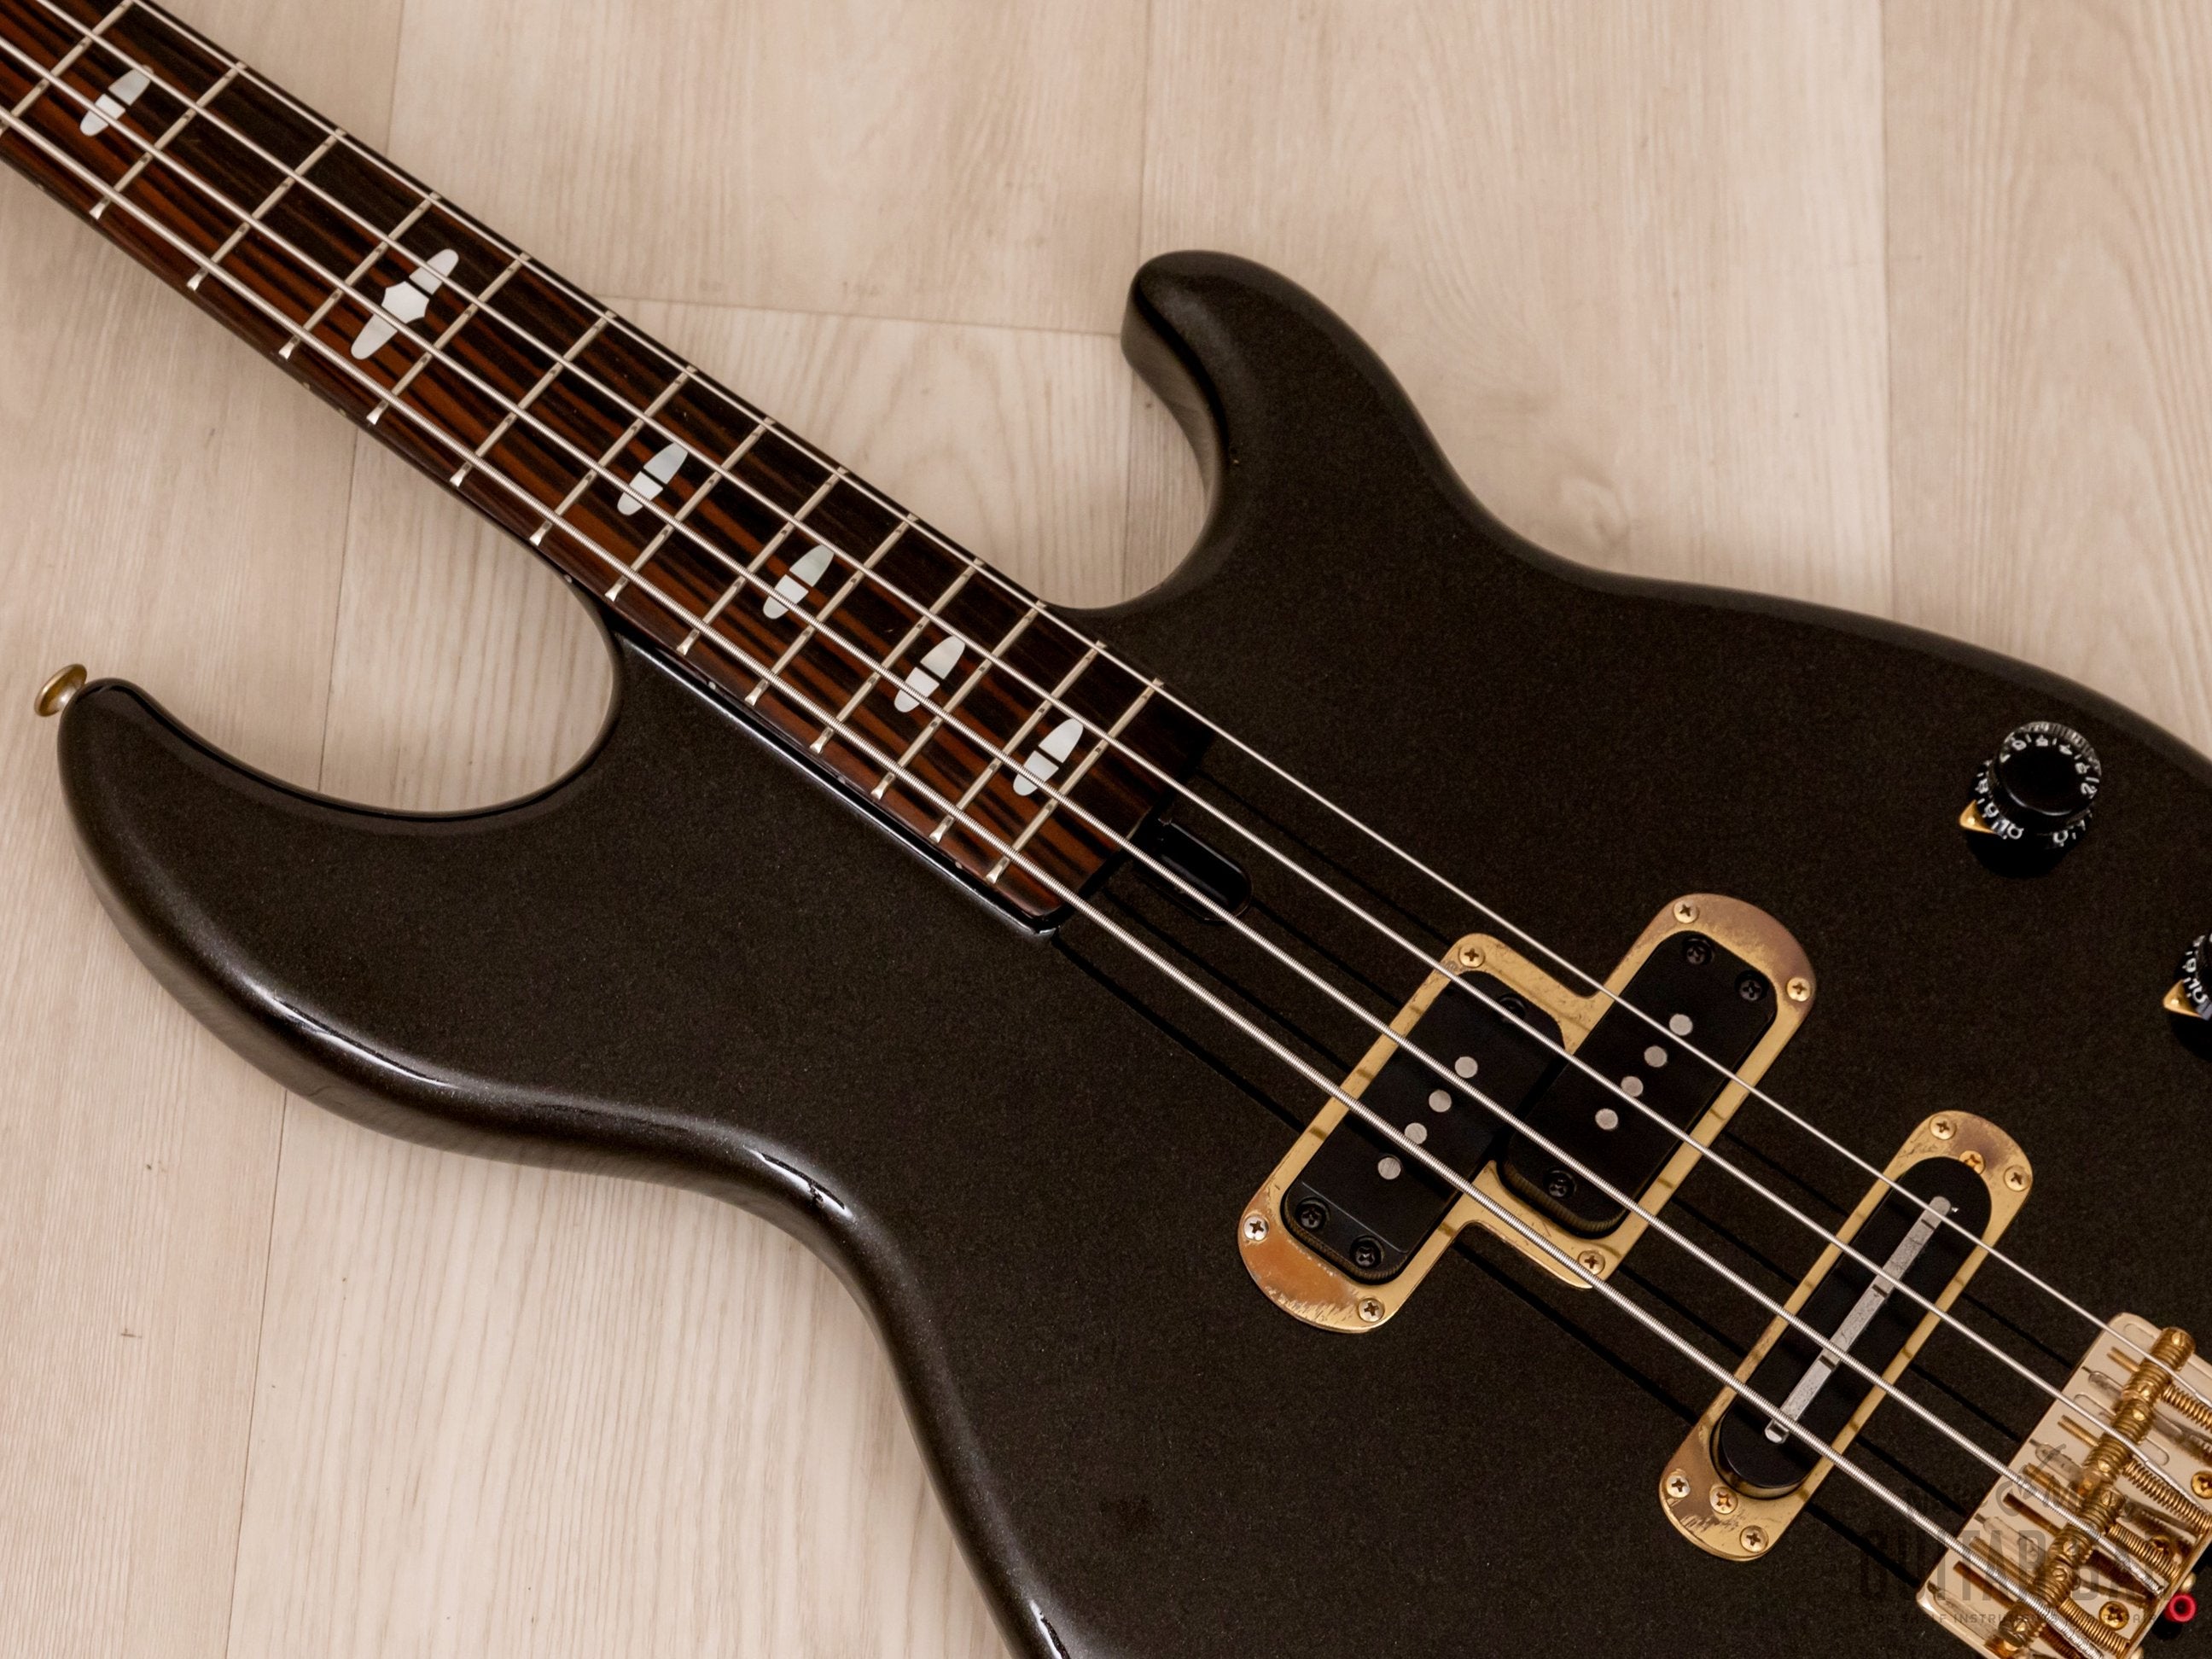 1983 Yamaha Broad Bass BB3000 Vintage Neck Through PJ Bass Guitar Metallic Black, Japan